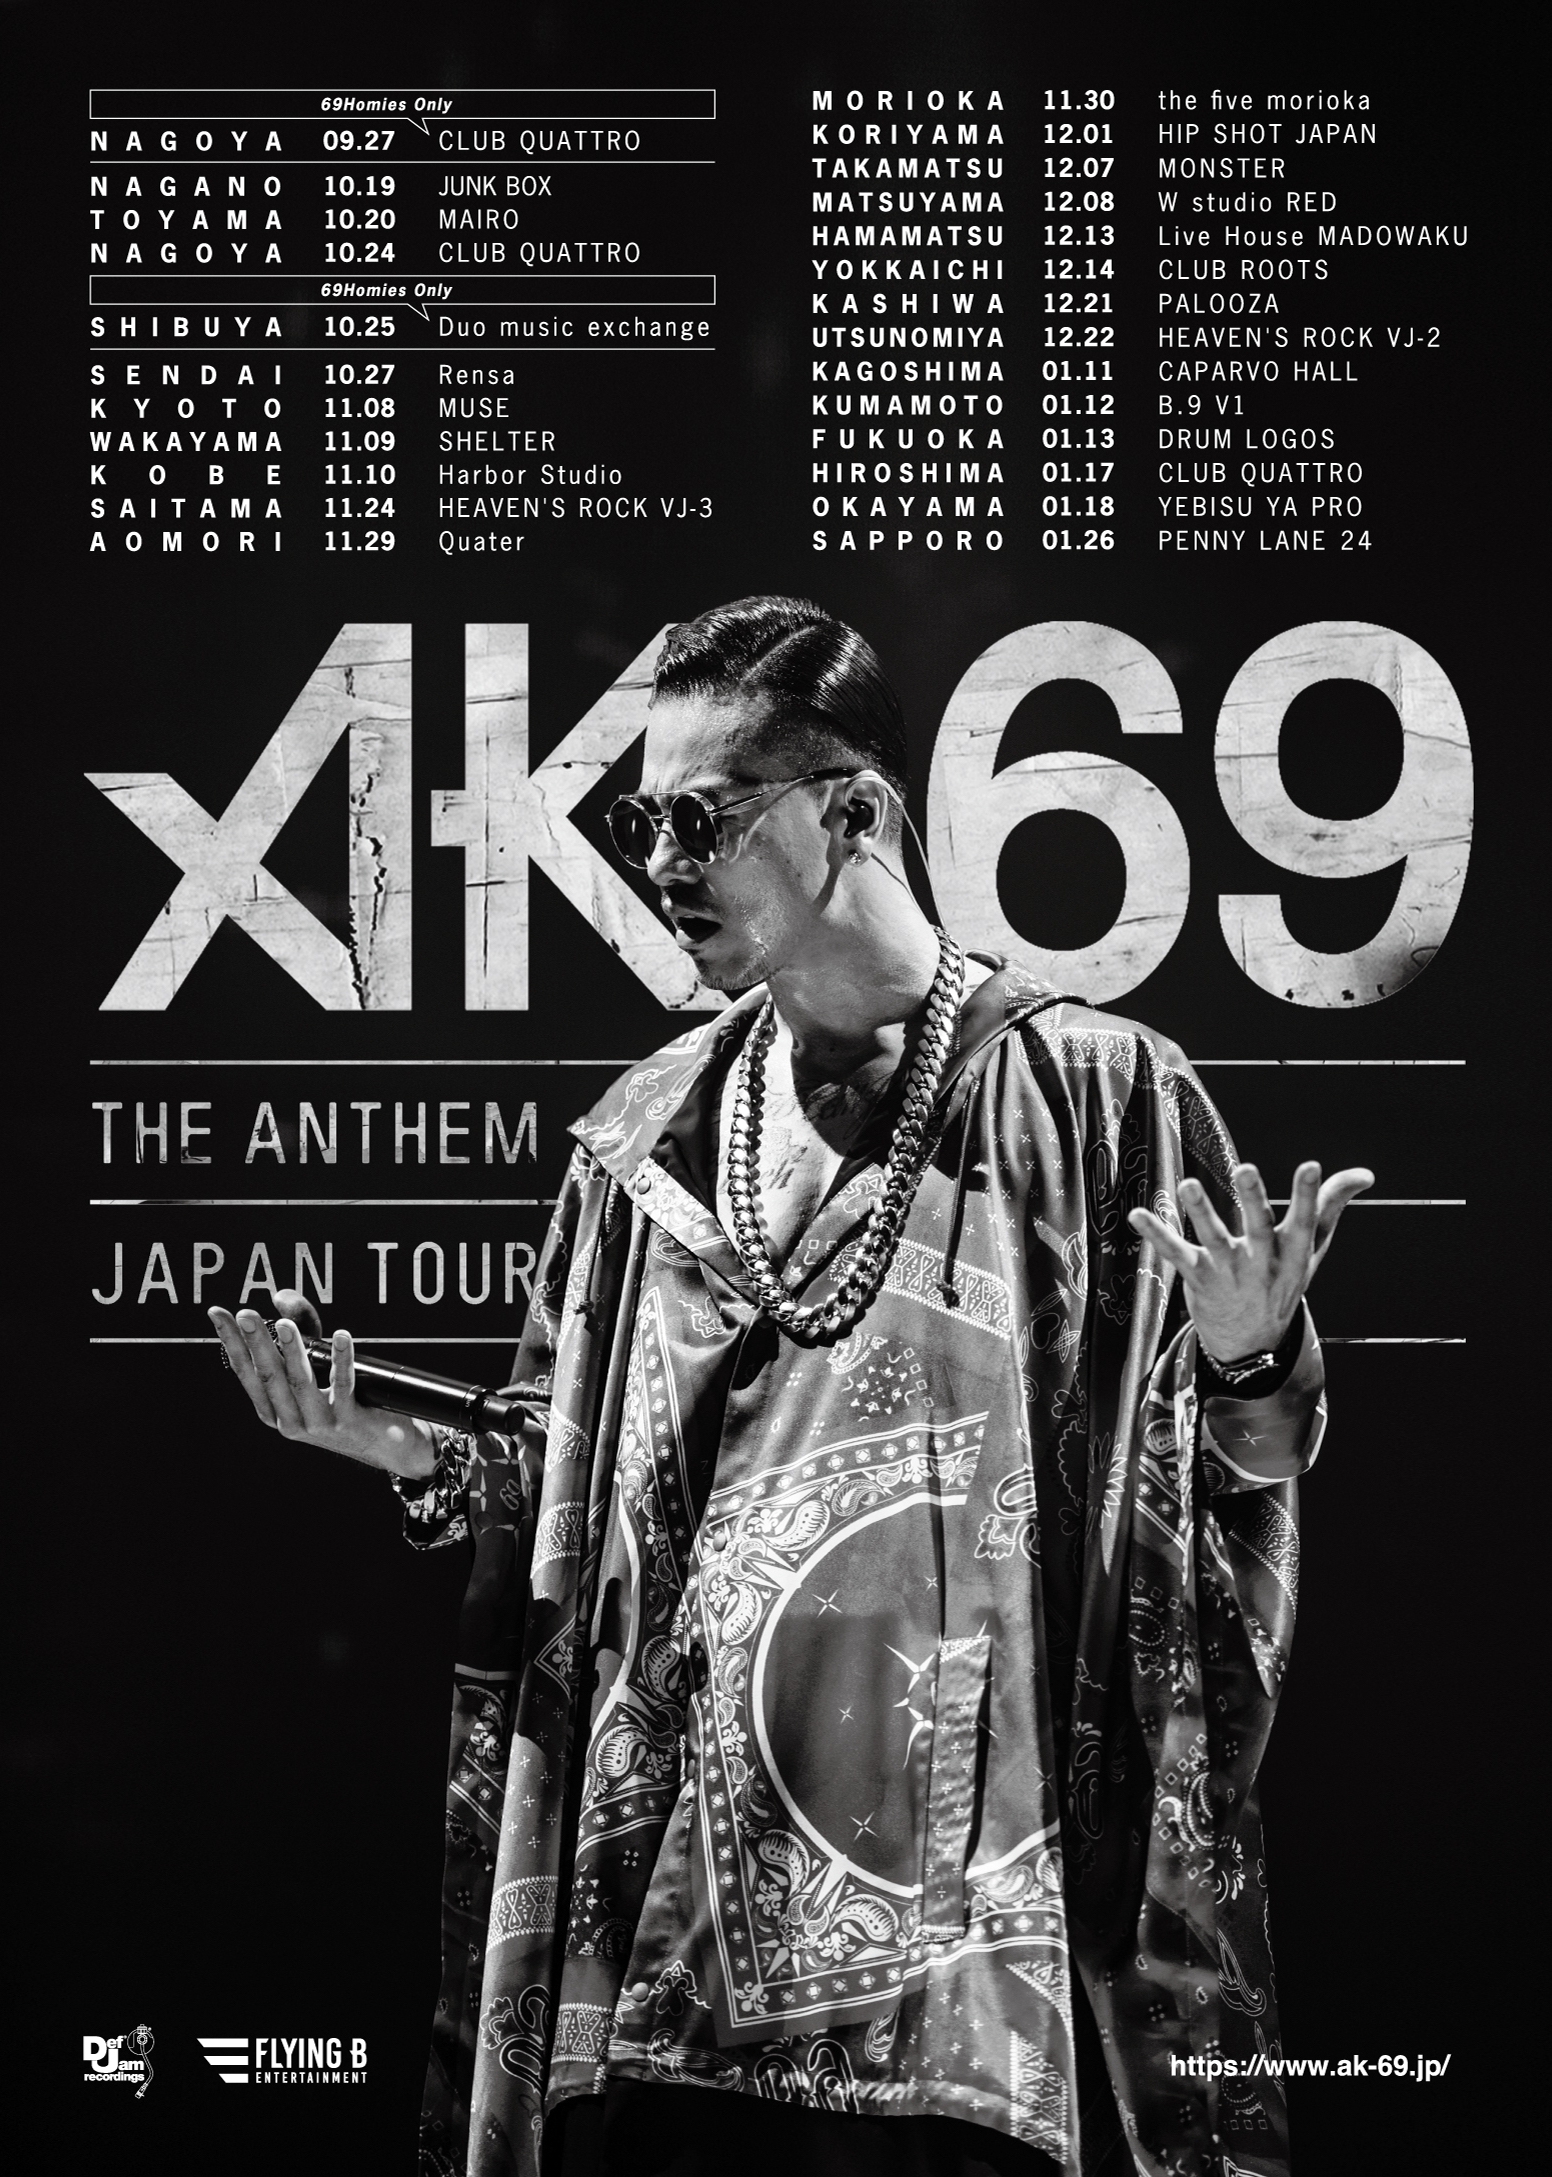 ありがとうございますAK-69ライブチケット 3月29日大阪市オリックス劇場